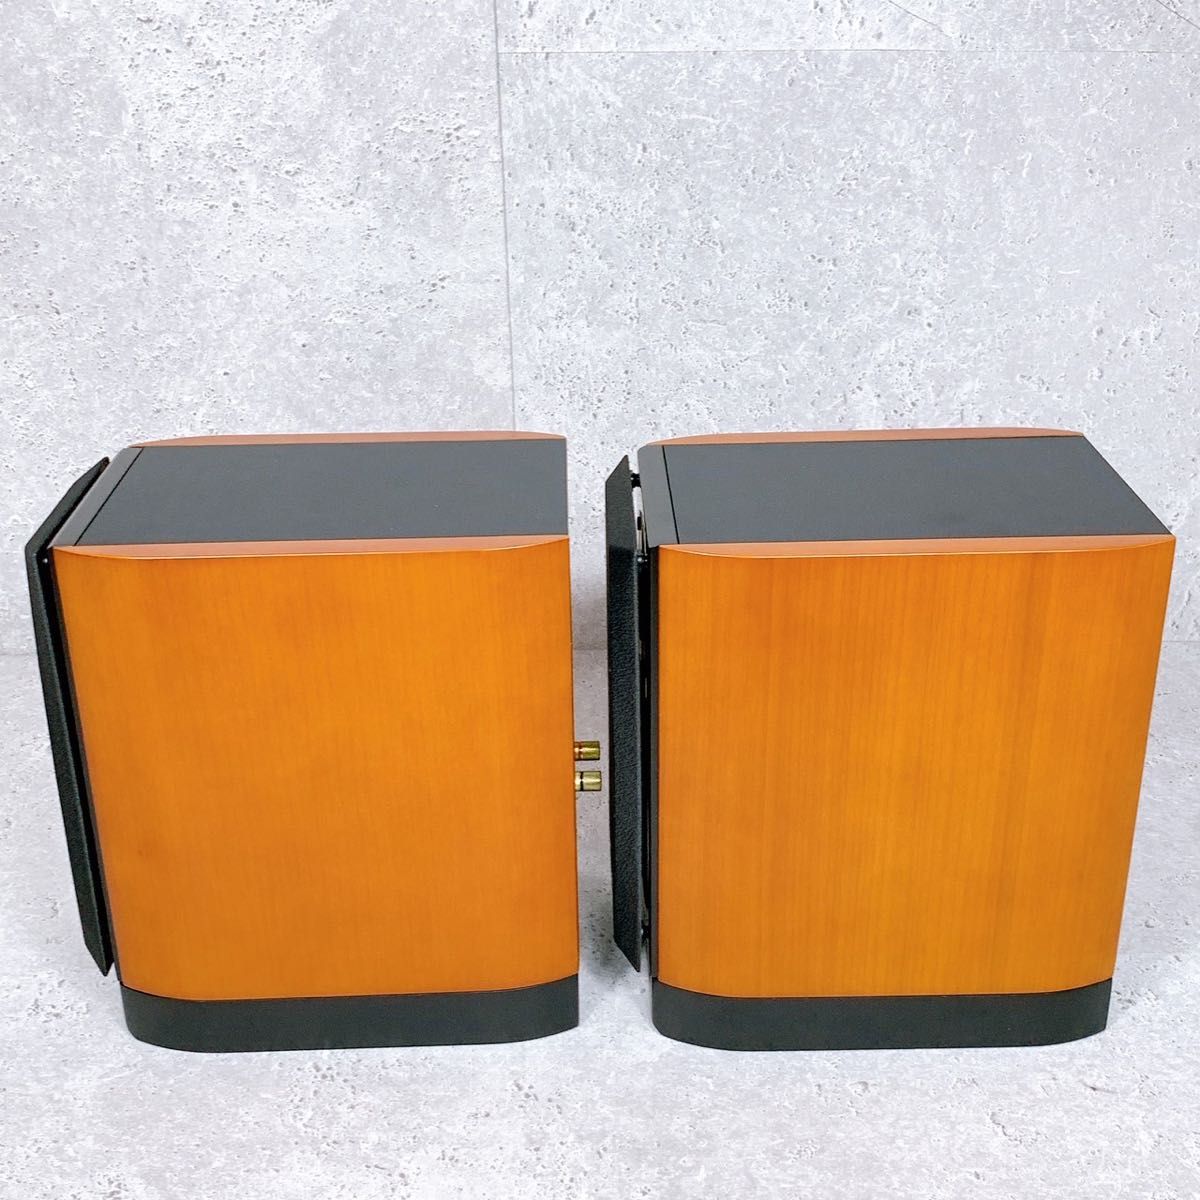 美品 ONKYO D-212EX スピーカーシステム ペア 2台 シリアル同番 オンキョー 高音質 ブックシェルフスピーカー 廃盤